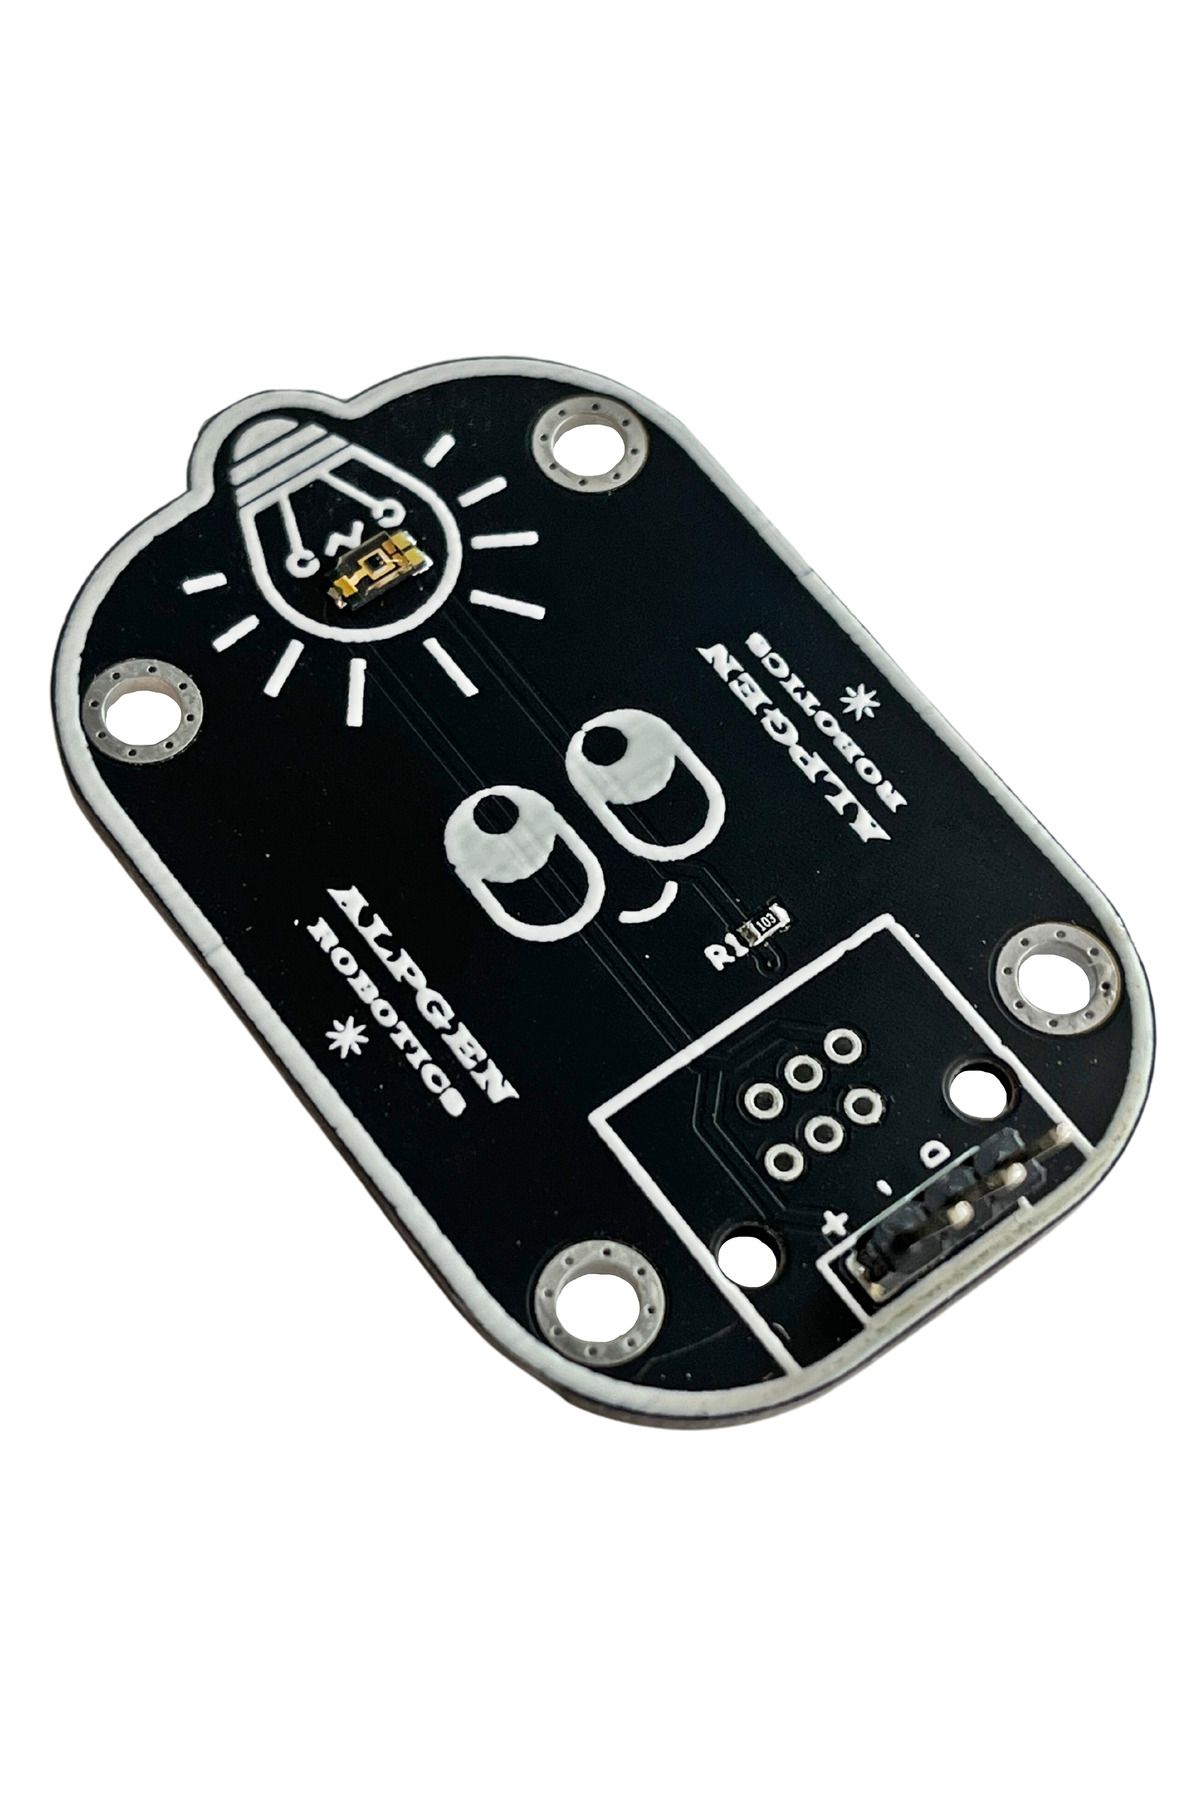 Arduino Tempt6000 Hassas Işık Sensör Modülü